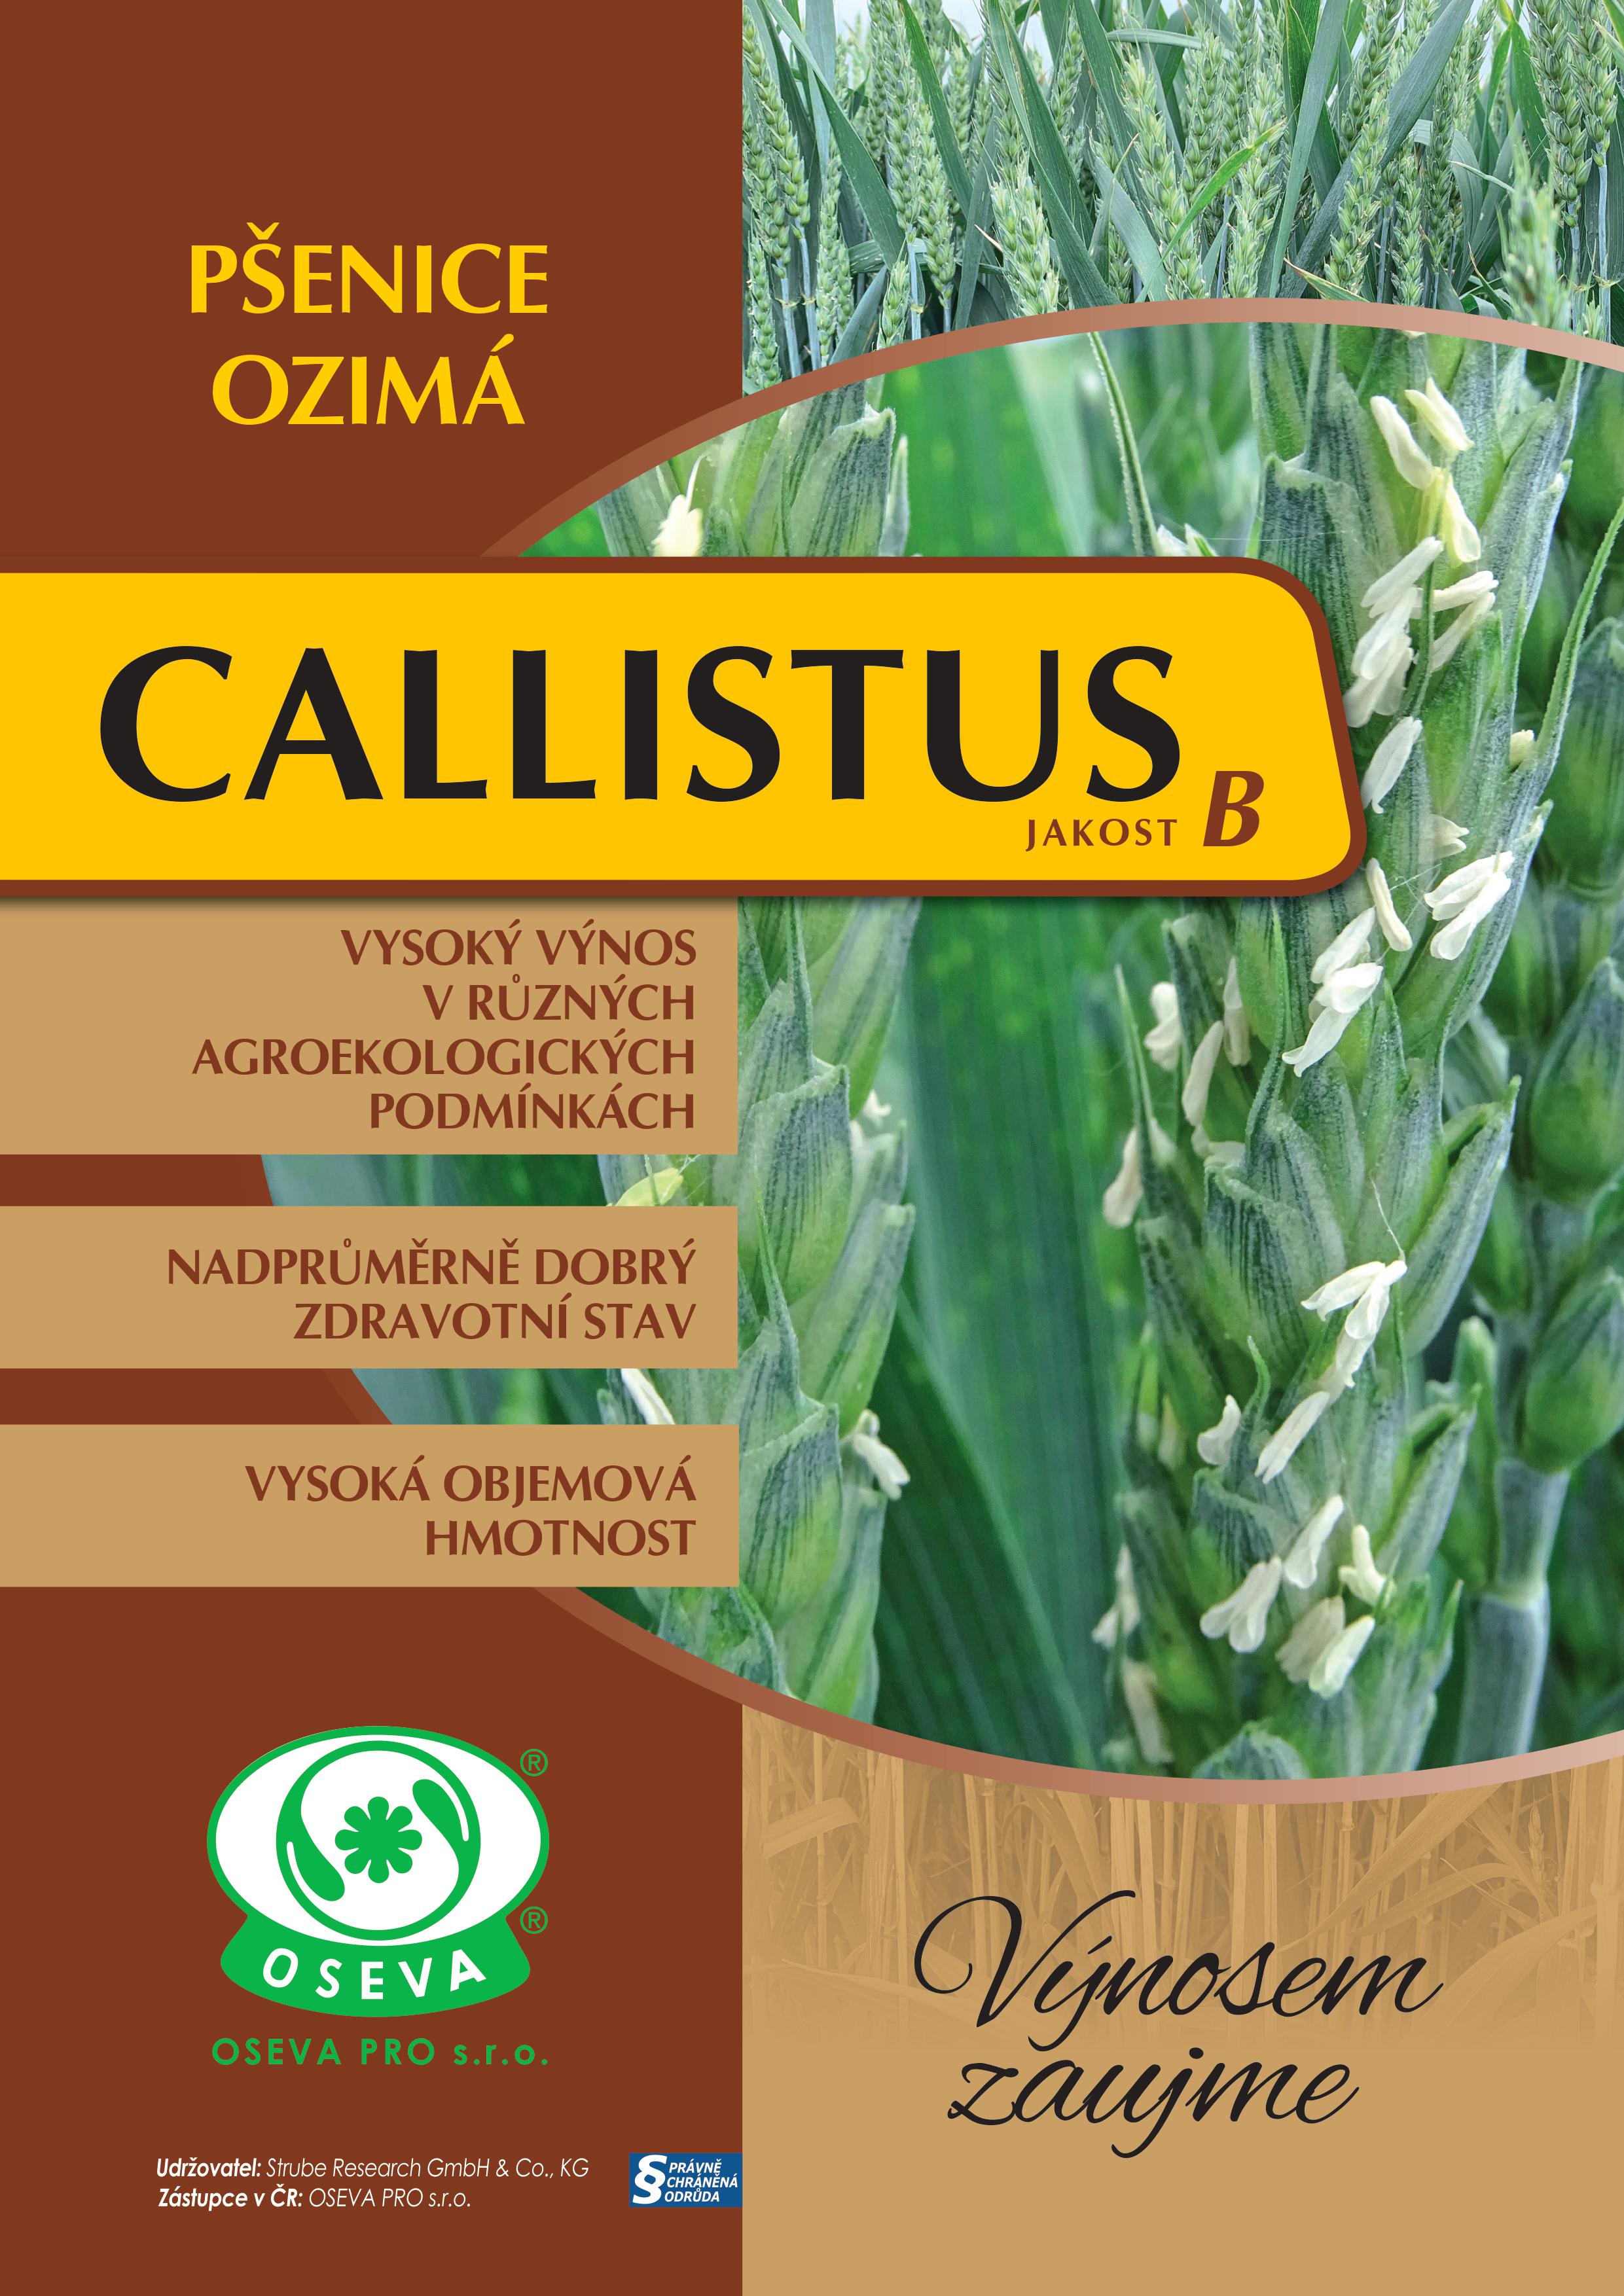 Pšenice ozimá - callistus